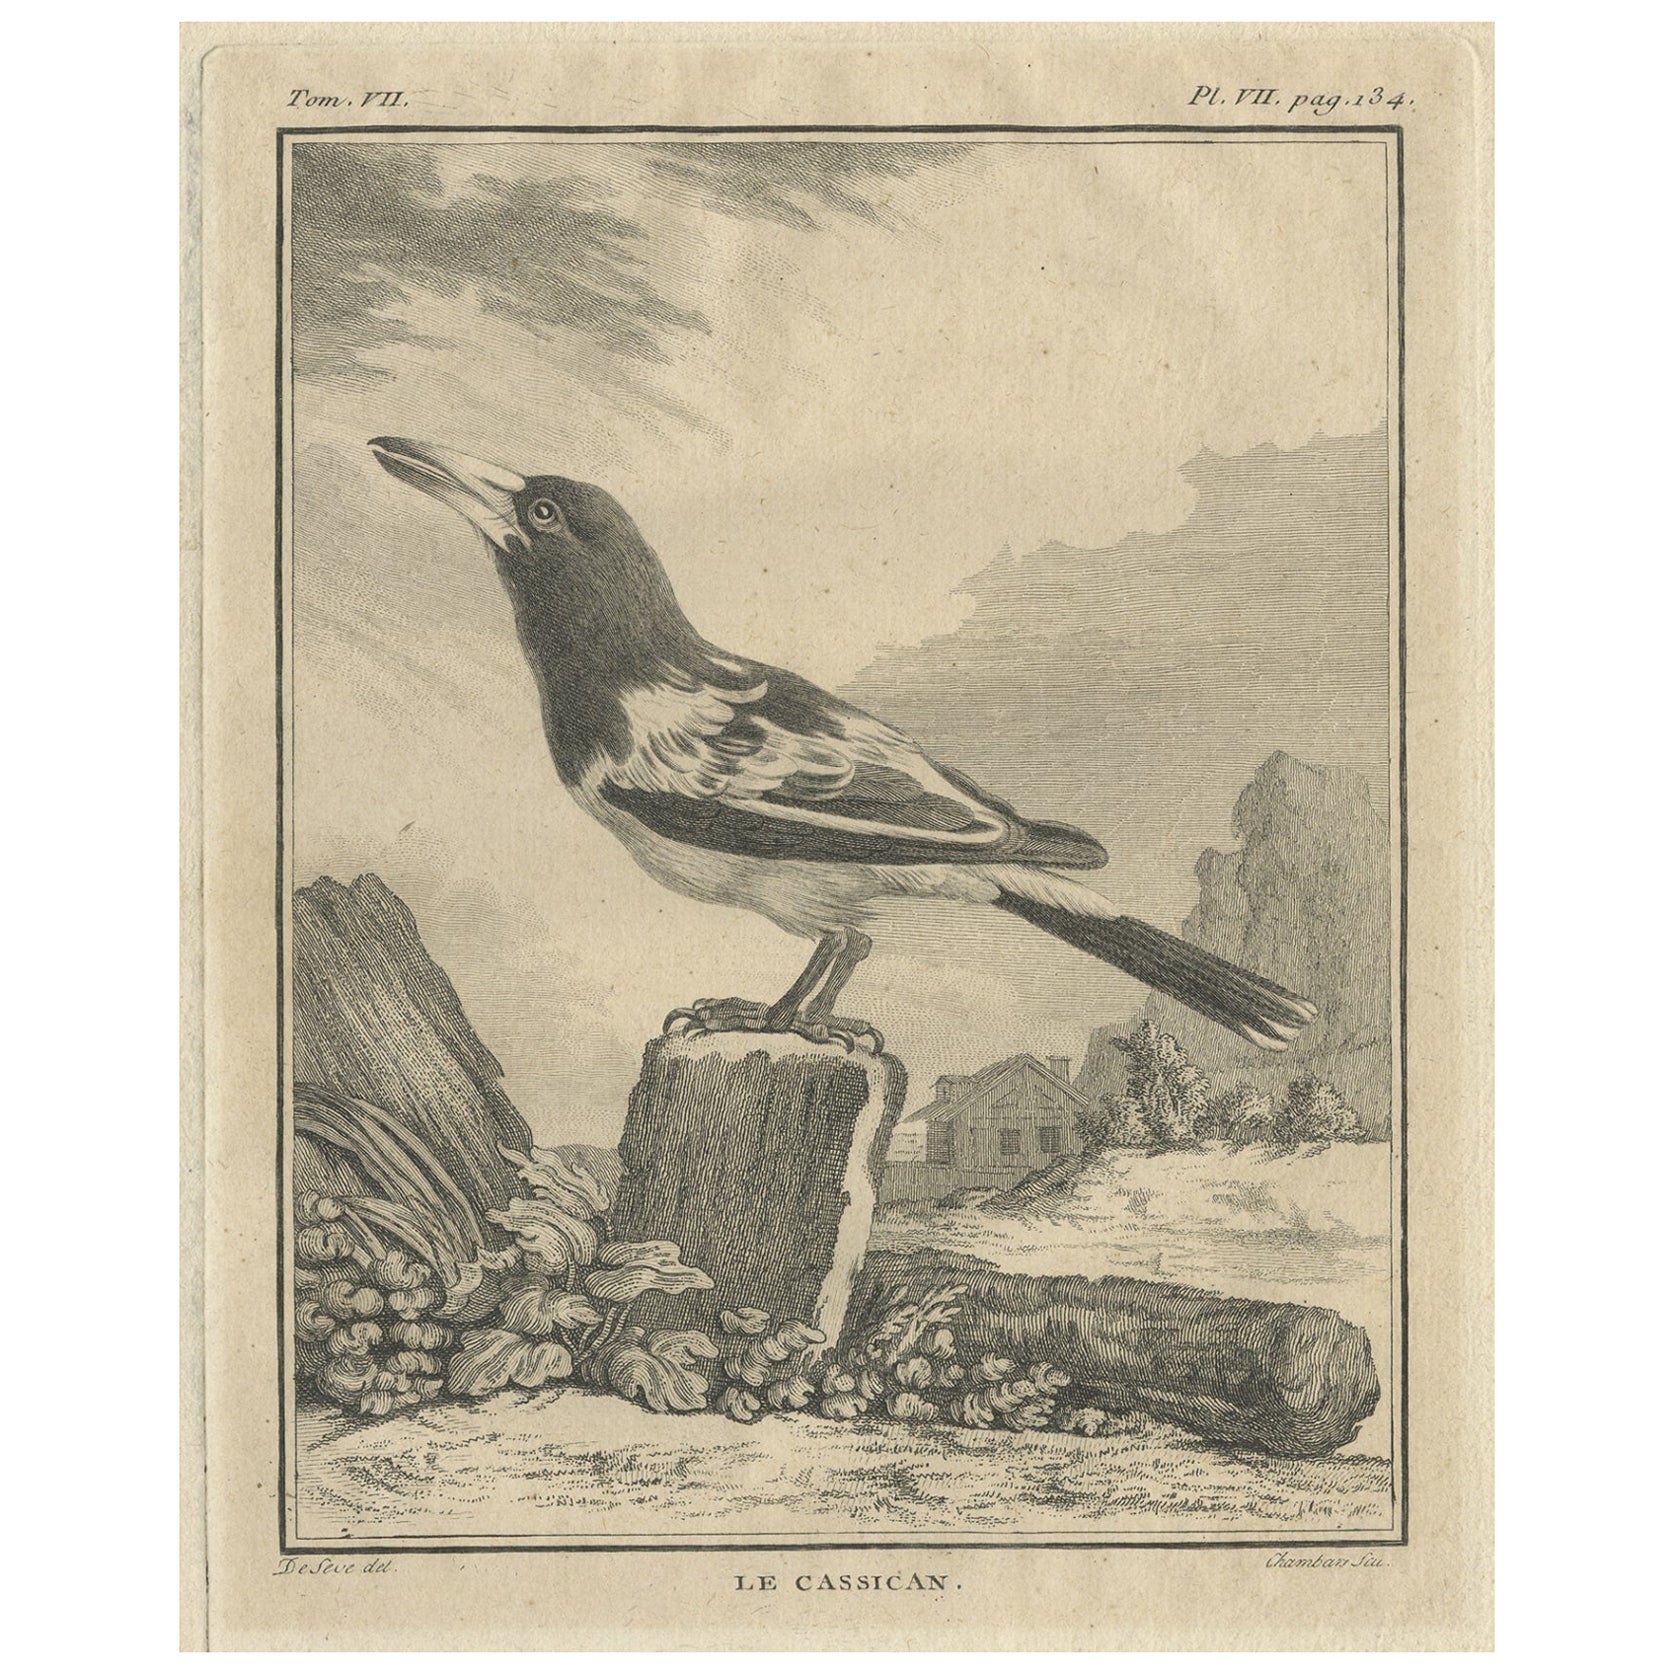 Antique Engraving of the Cassican Bird, a Corn Bird or Australian Magpie, 1795